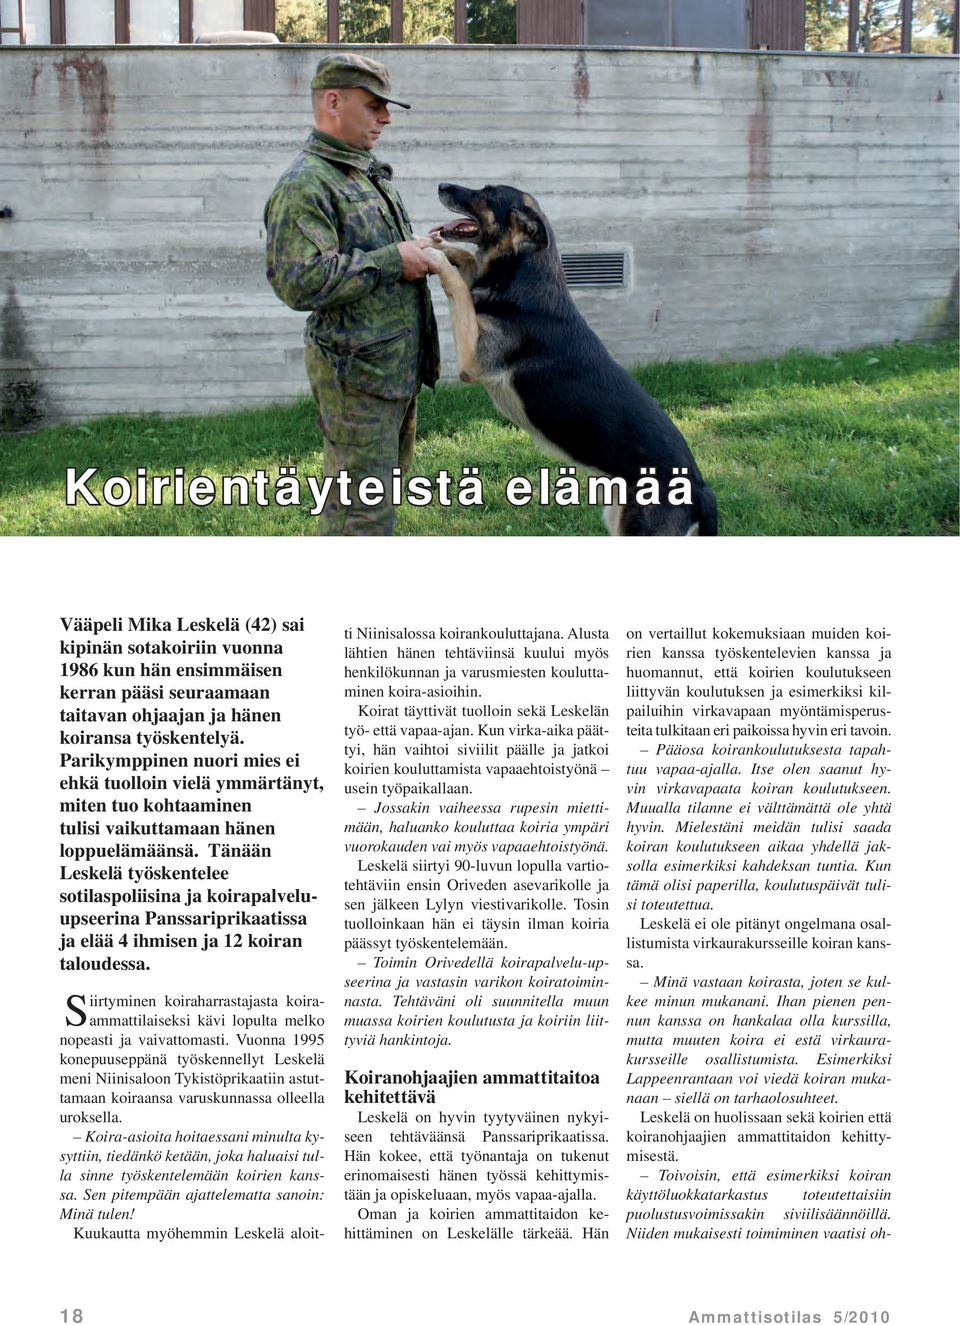 Tänään Leskelä työskentelee sotilaspoliisina ja koirapalveluupseerina Panssariprikaatissa ja elää 4 ihmisen ja 12 koiran taloudessa.